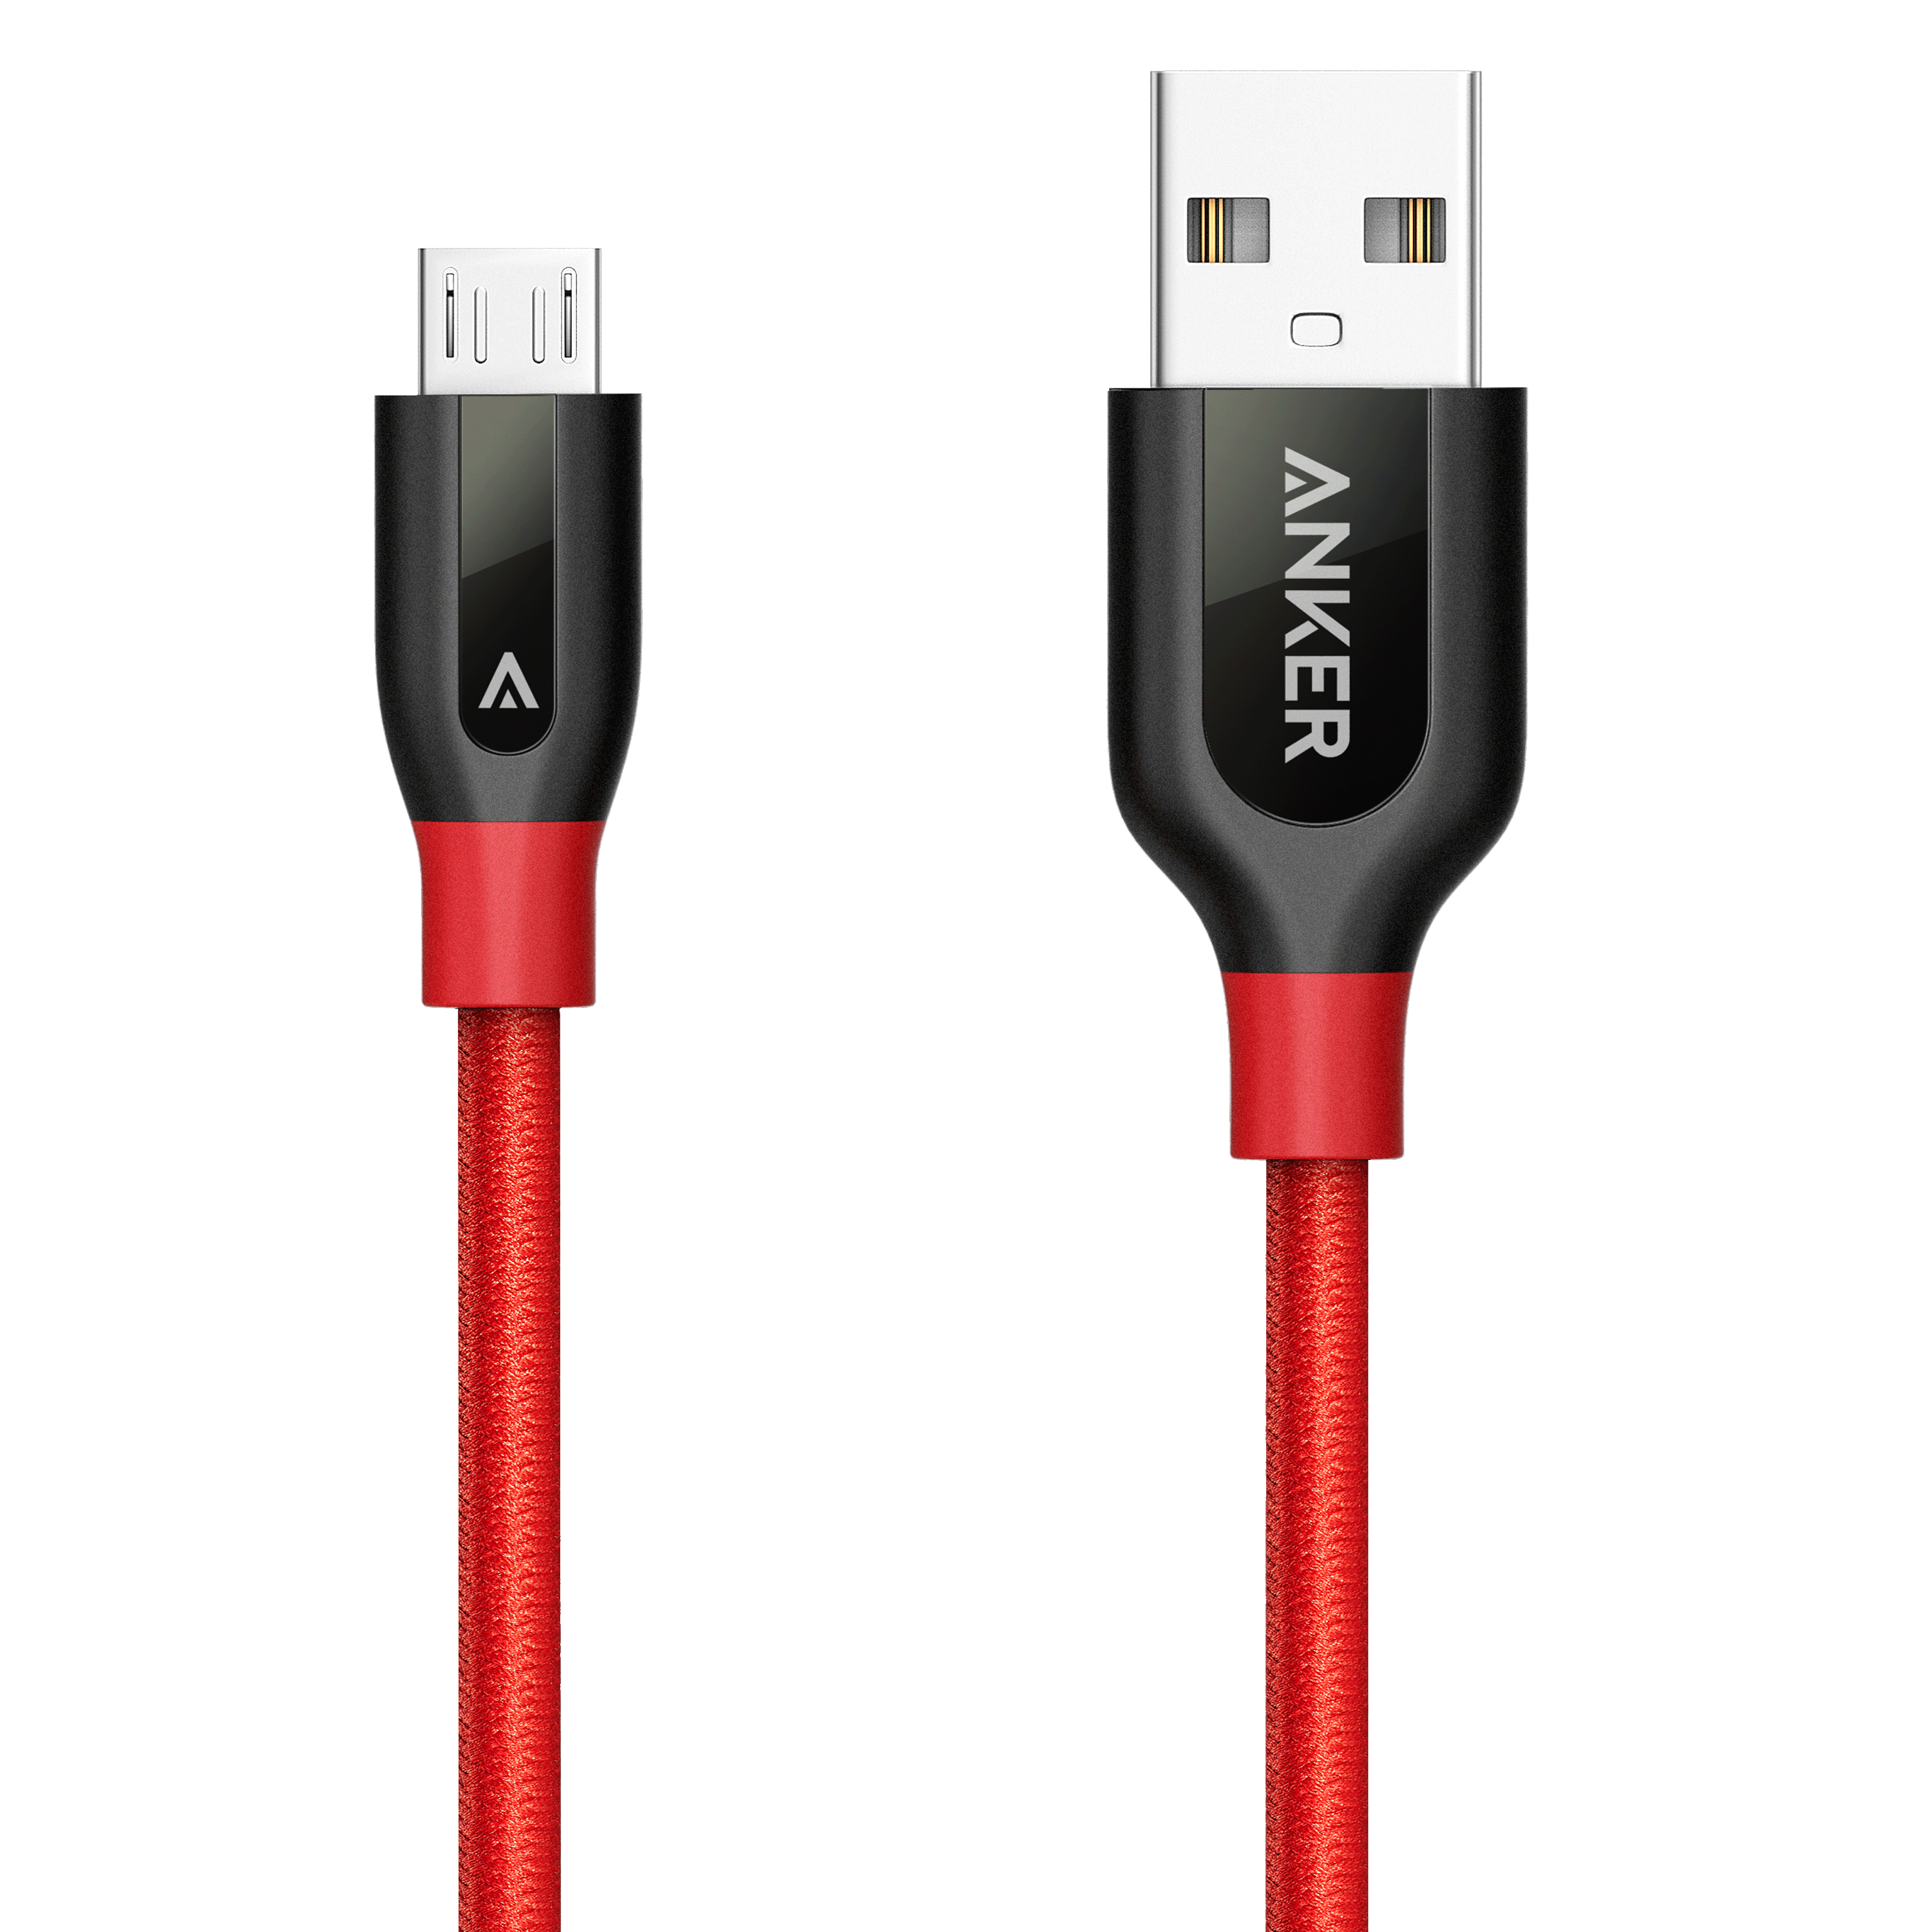 Anker Powerline+ Micro USB Örgülü Şarj/Data Kablosu 1.8 Metre- Kırmızı